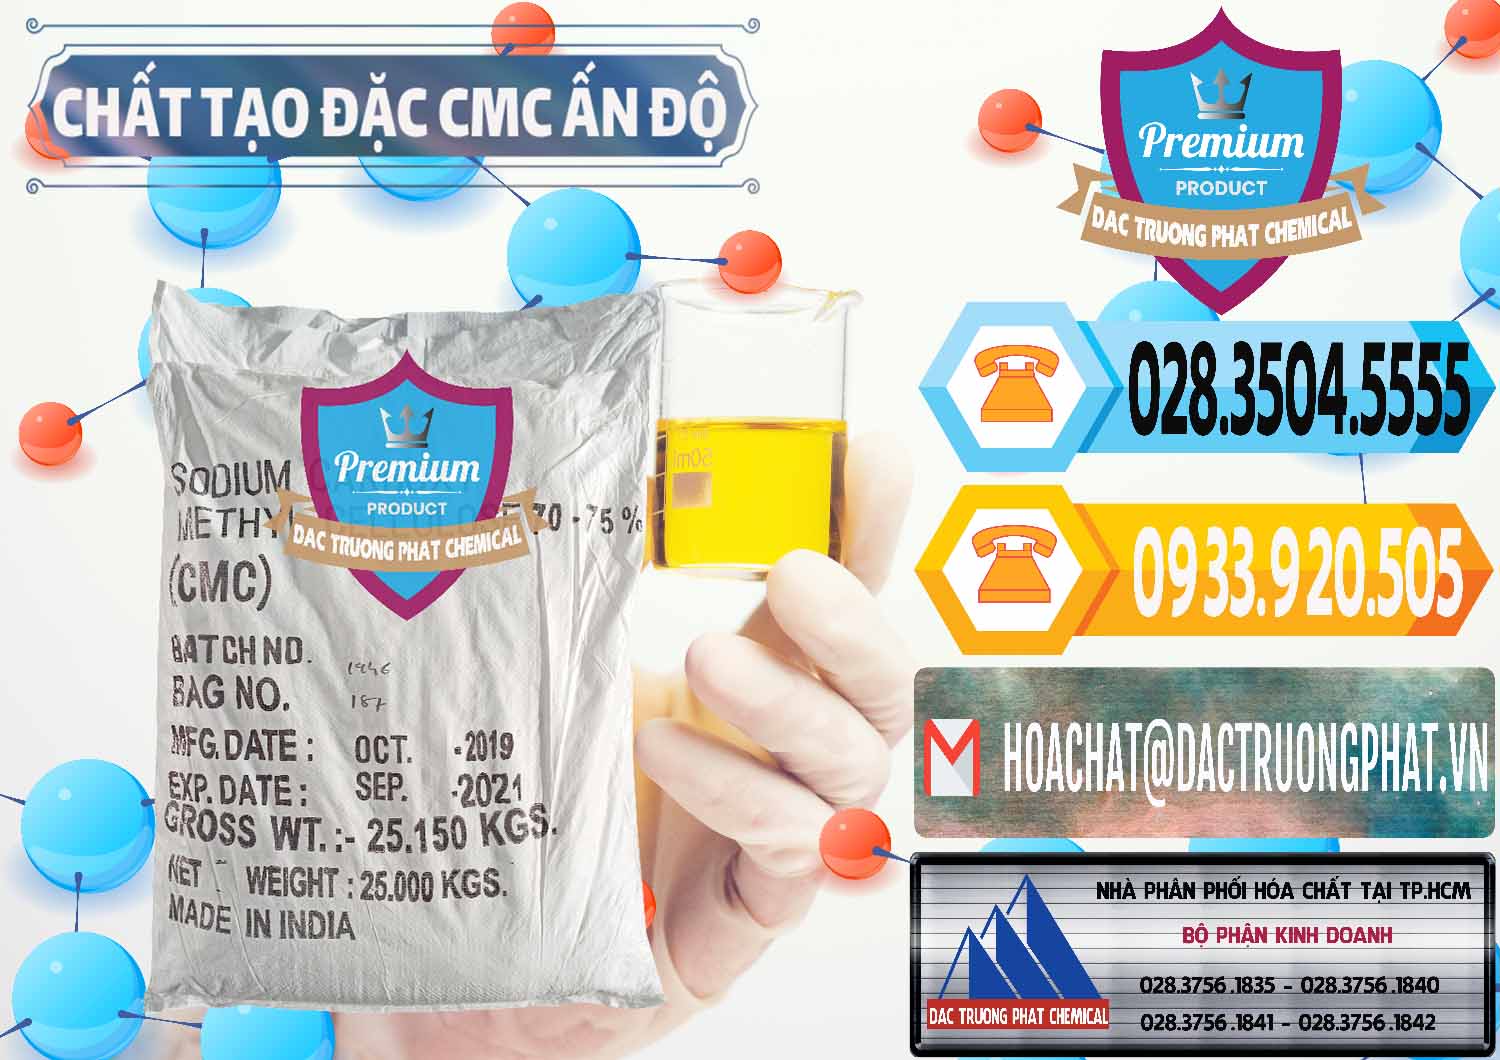 Đơn vị cung ứng và bán Chất Tạo Đặc CMC - Carboxyl Methyl Cellulose Ấn Độ India - 0044 - Cty cung cấp & kinh doanh hóa chất tại TP.HCM - hoachattayrua.net